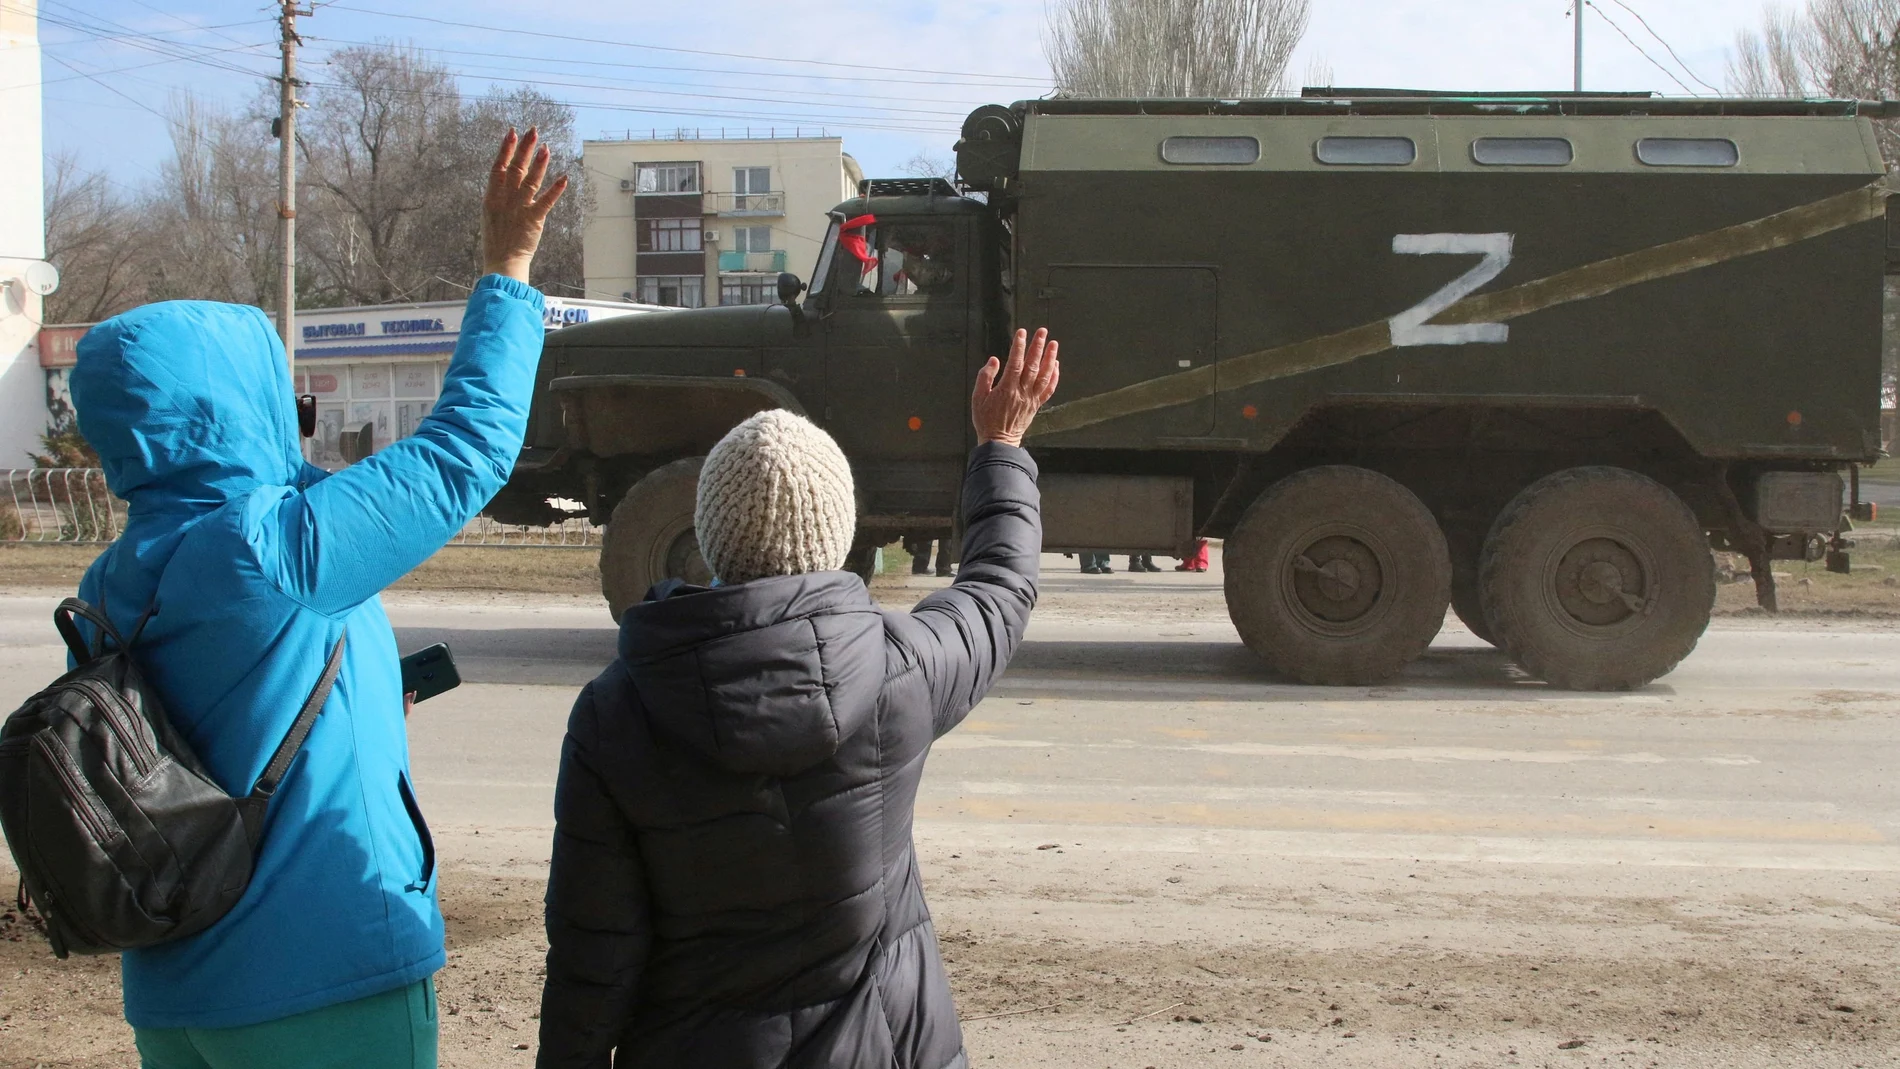 La gente saluda mientras un camión militar del ejército ruso conduce por una calle de Crimea | Fuente: REUTERS